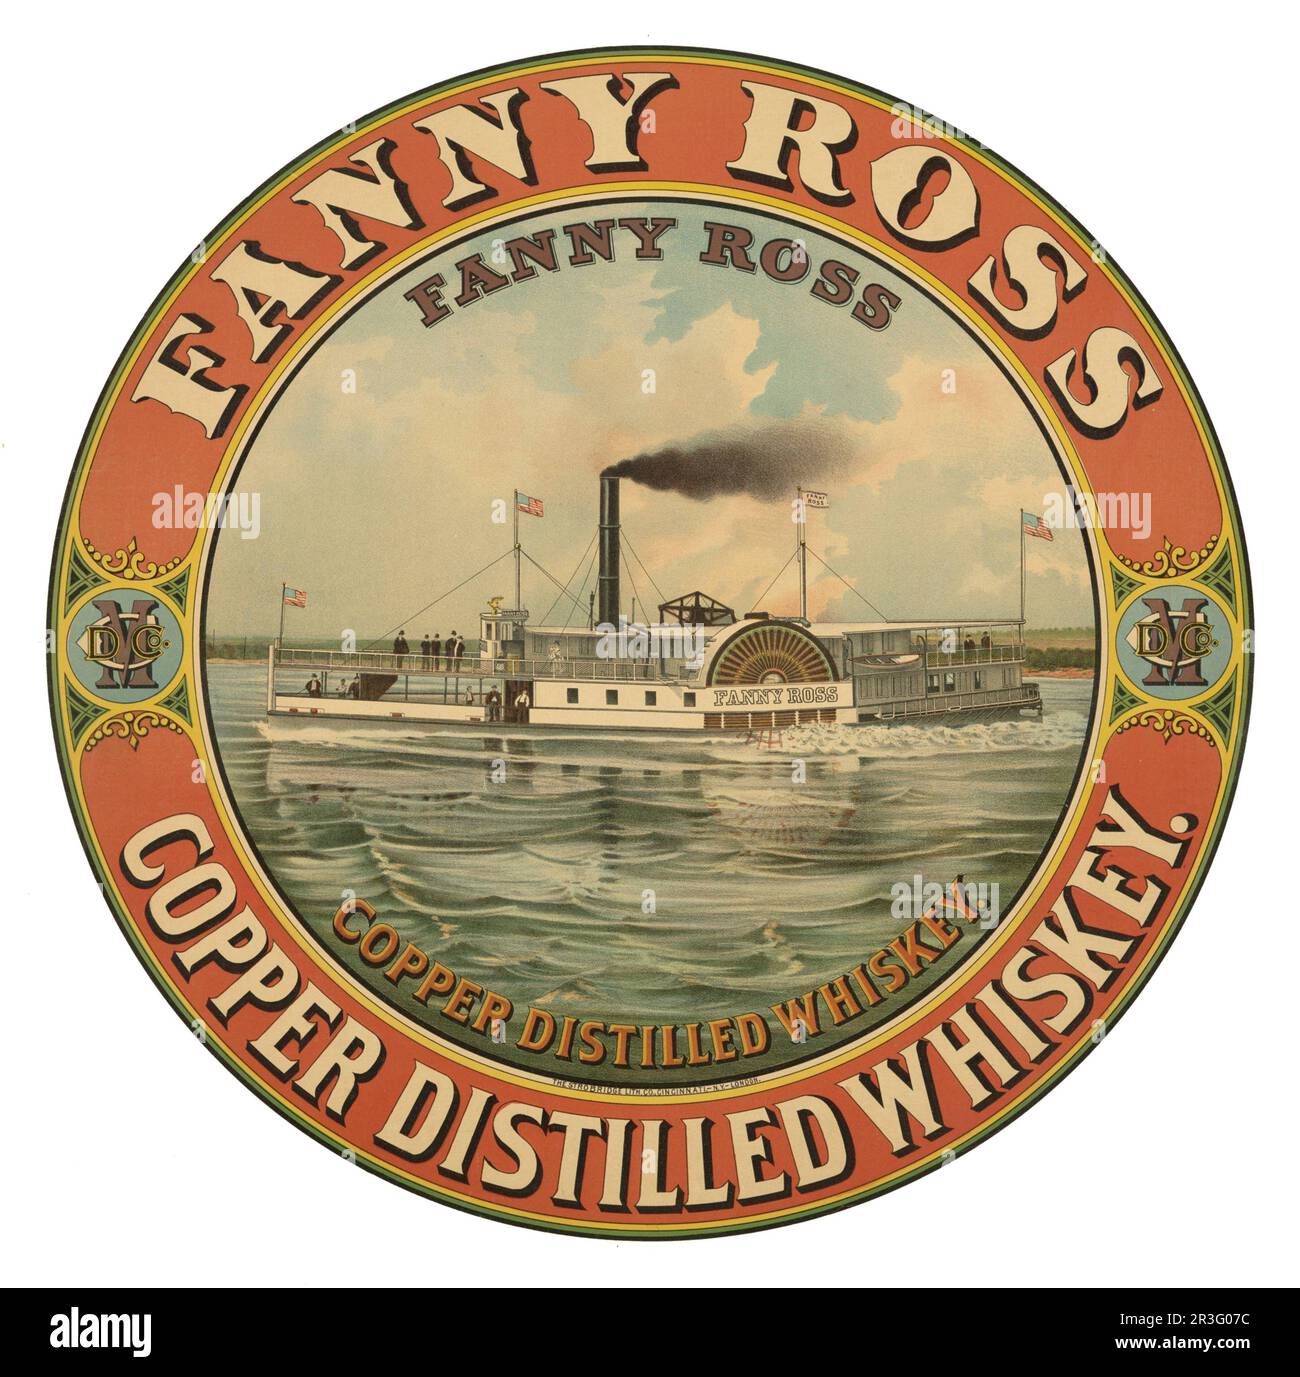 Anuncio vintage para Fanny Ross whisky destilado de cobre. Foto de stock